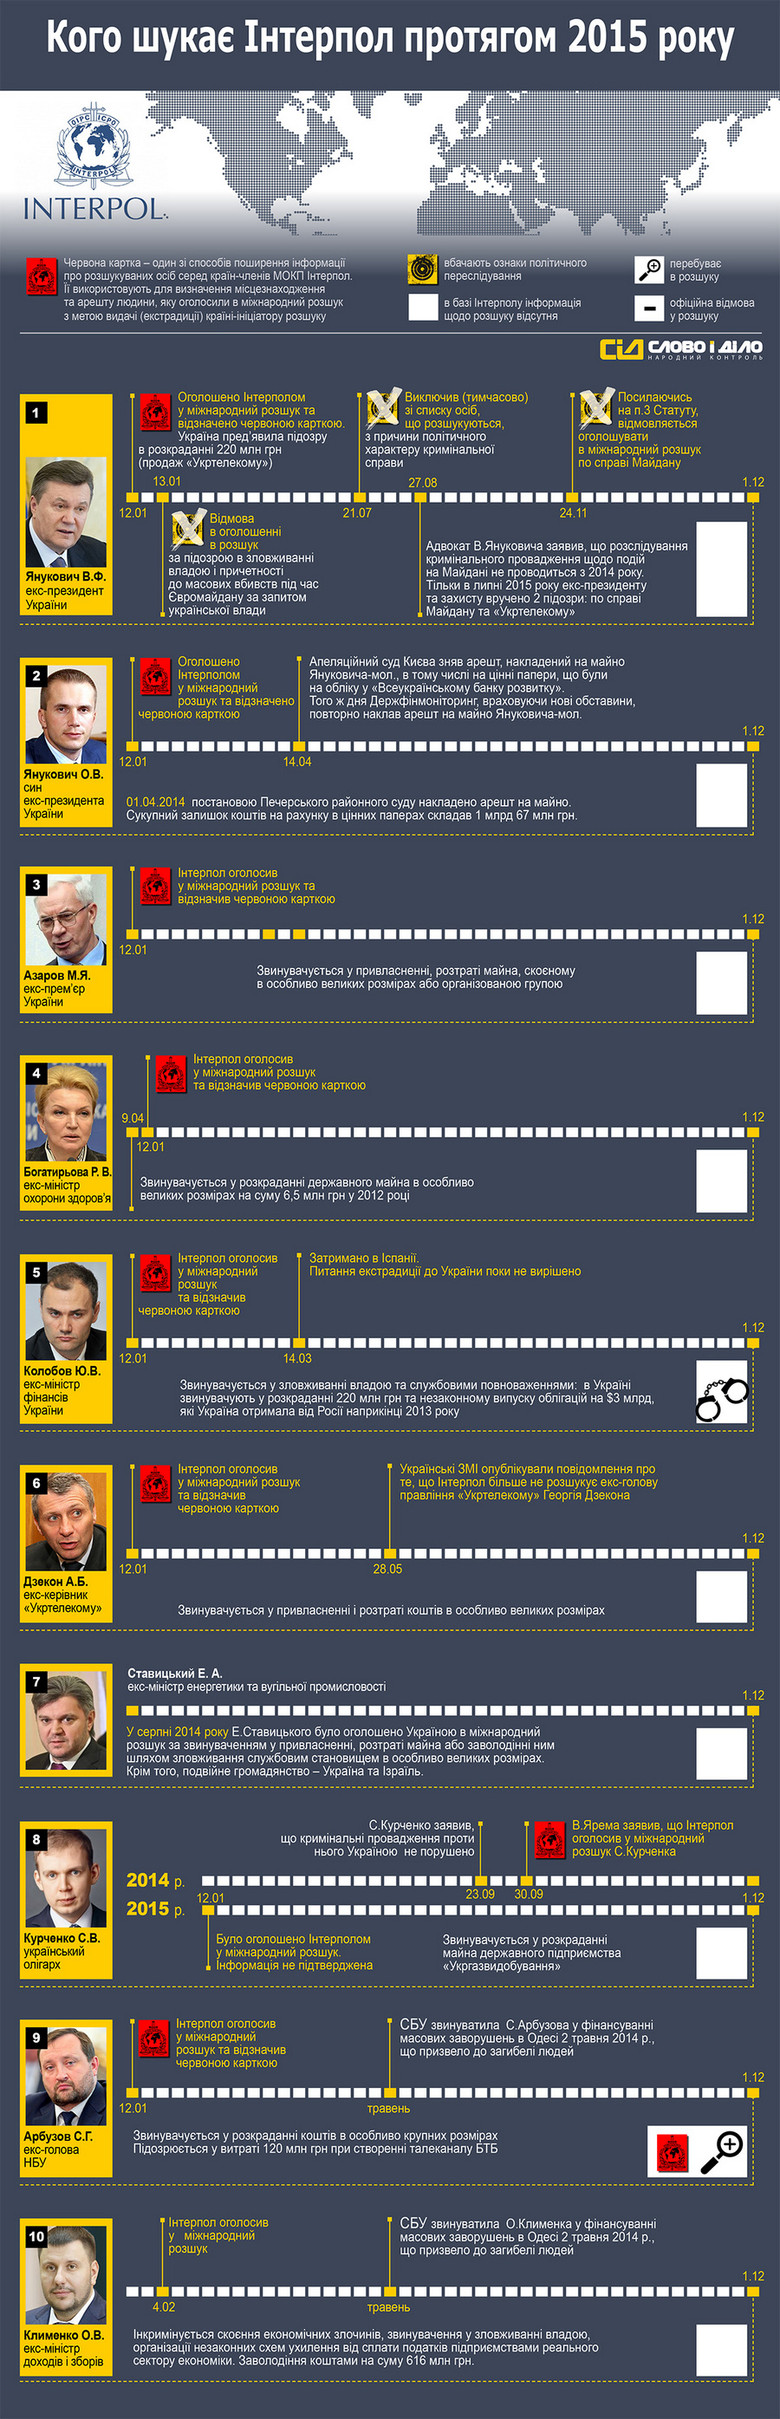 Почти два года назад команда Виктора Януковича покинула территорию Украины. Его окружению удалось не только сбежать, но и вывести из страны капиталы. Почти все эти люди были объявлены в международный розыск.